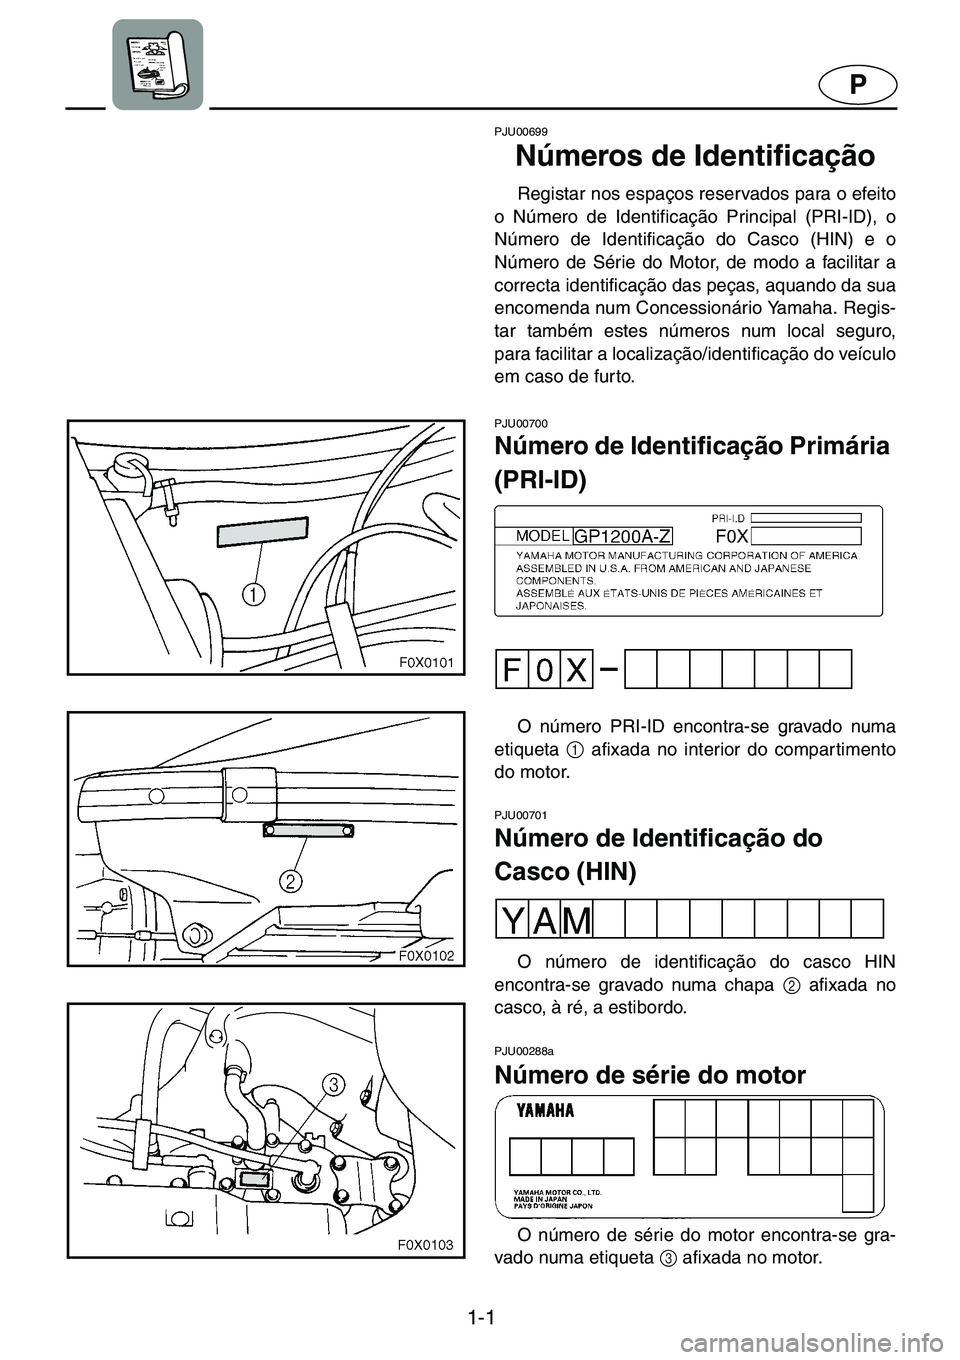 YAMAHA GP1200 2001  Manual de utilização (in Portuguese) 1-1
P
PJU00699 
Números de Identificação  
Registar nos espaços reservados para o efeito
o Número de Identificação Principal (PRI-ID), o
Número de Identificação do Casco (HIN) e o
Número de